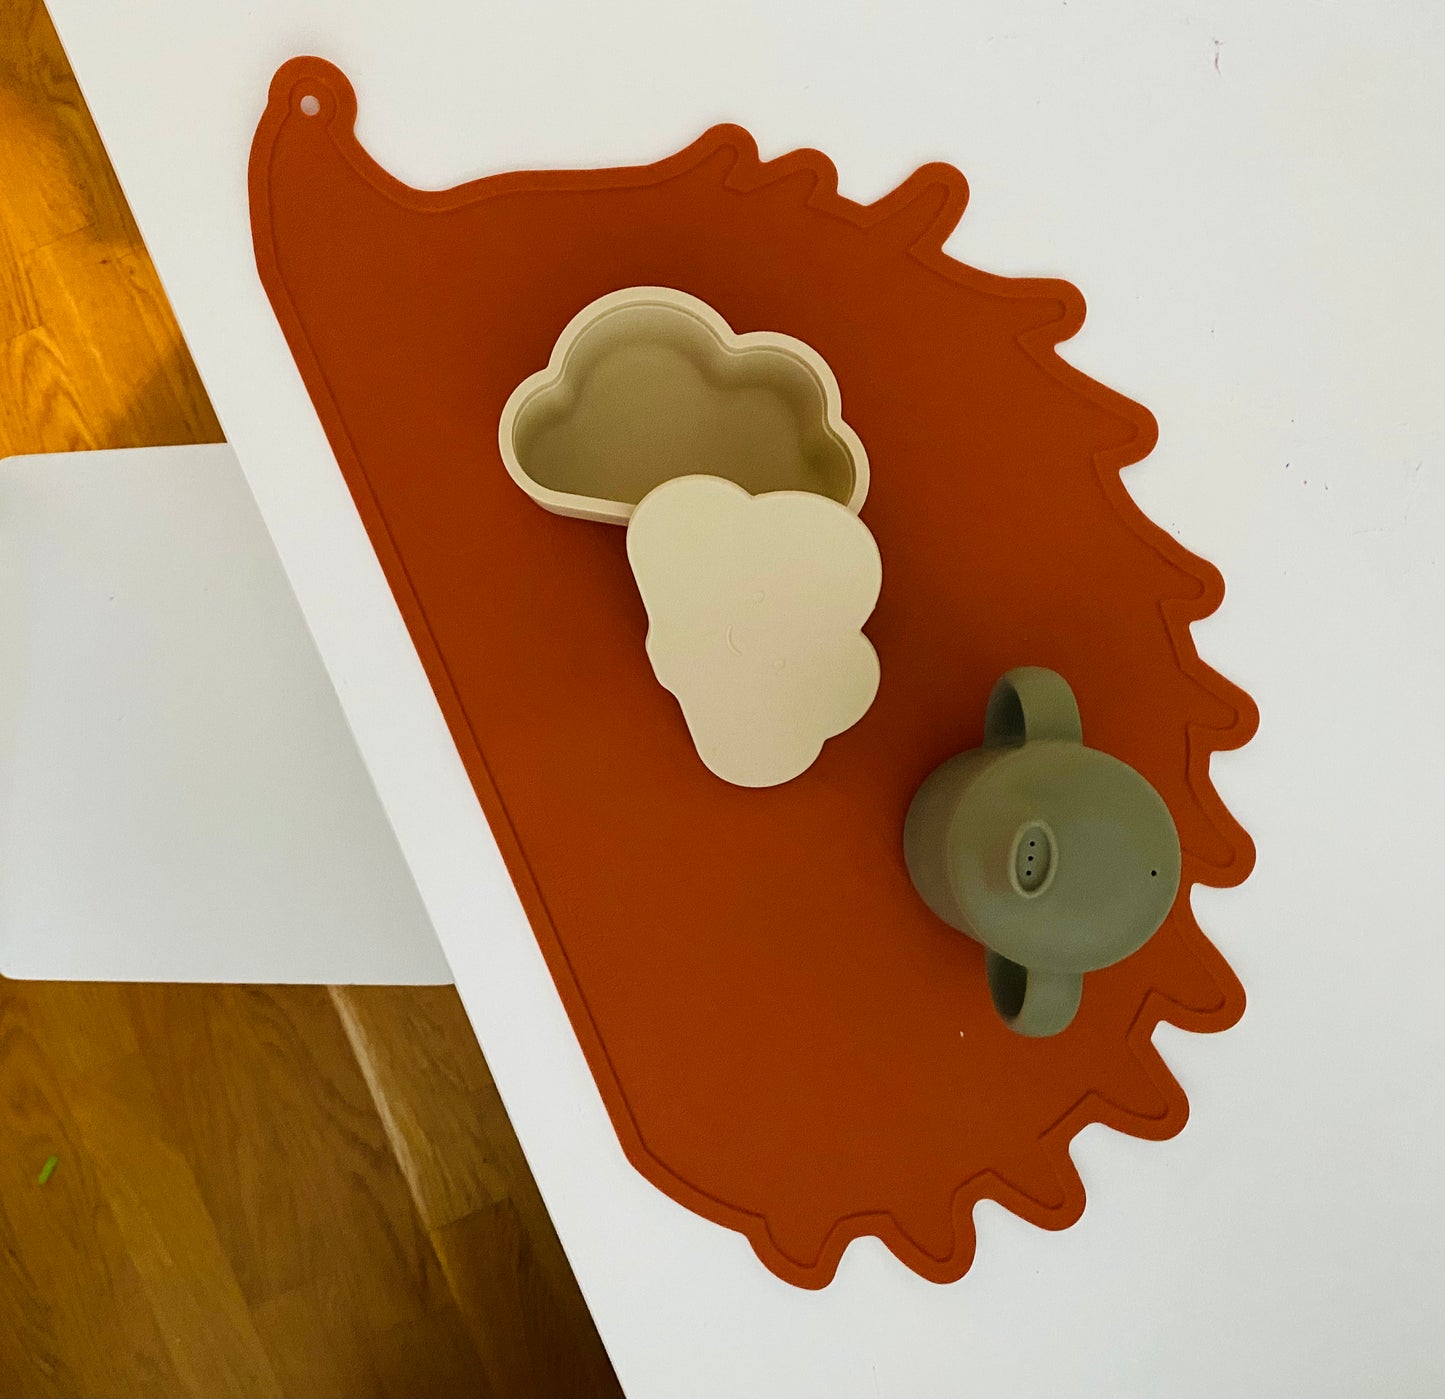 Baby-led weaning upplevelsemat - Babyplacemat i silikon för bordskydd, barnservis, vattentät, mjuk, enkel att rengöra (45,5 x 25 cm)